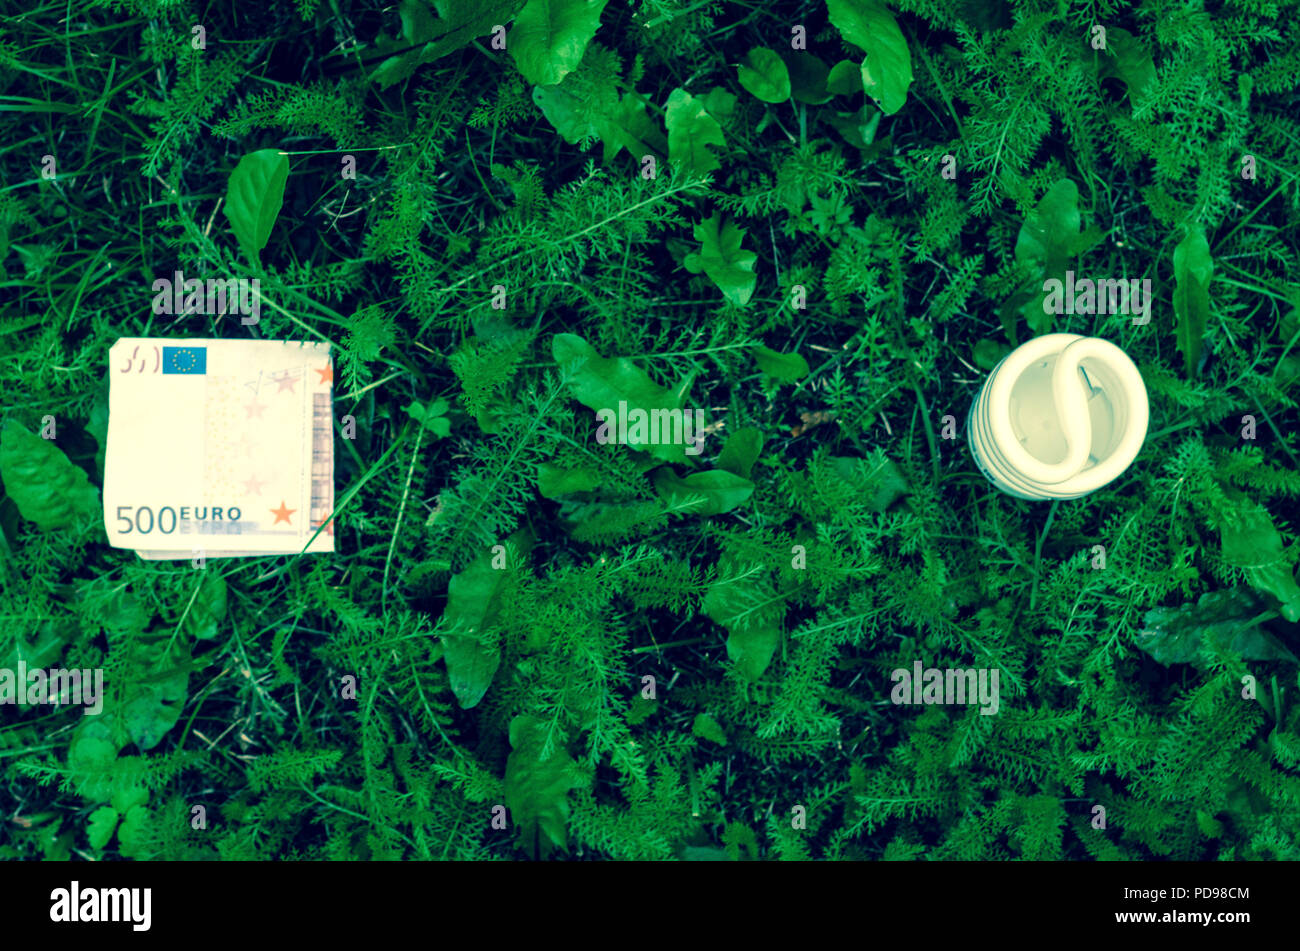 Risparmio energetico lampada e di banconote in euro sul verde scuro dello sfondo di erba. Foto Stock